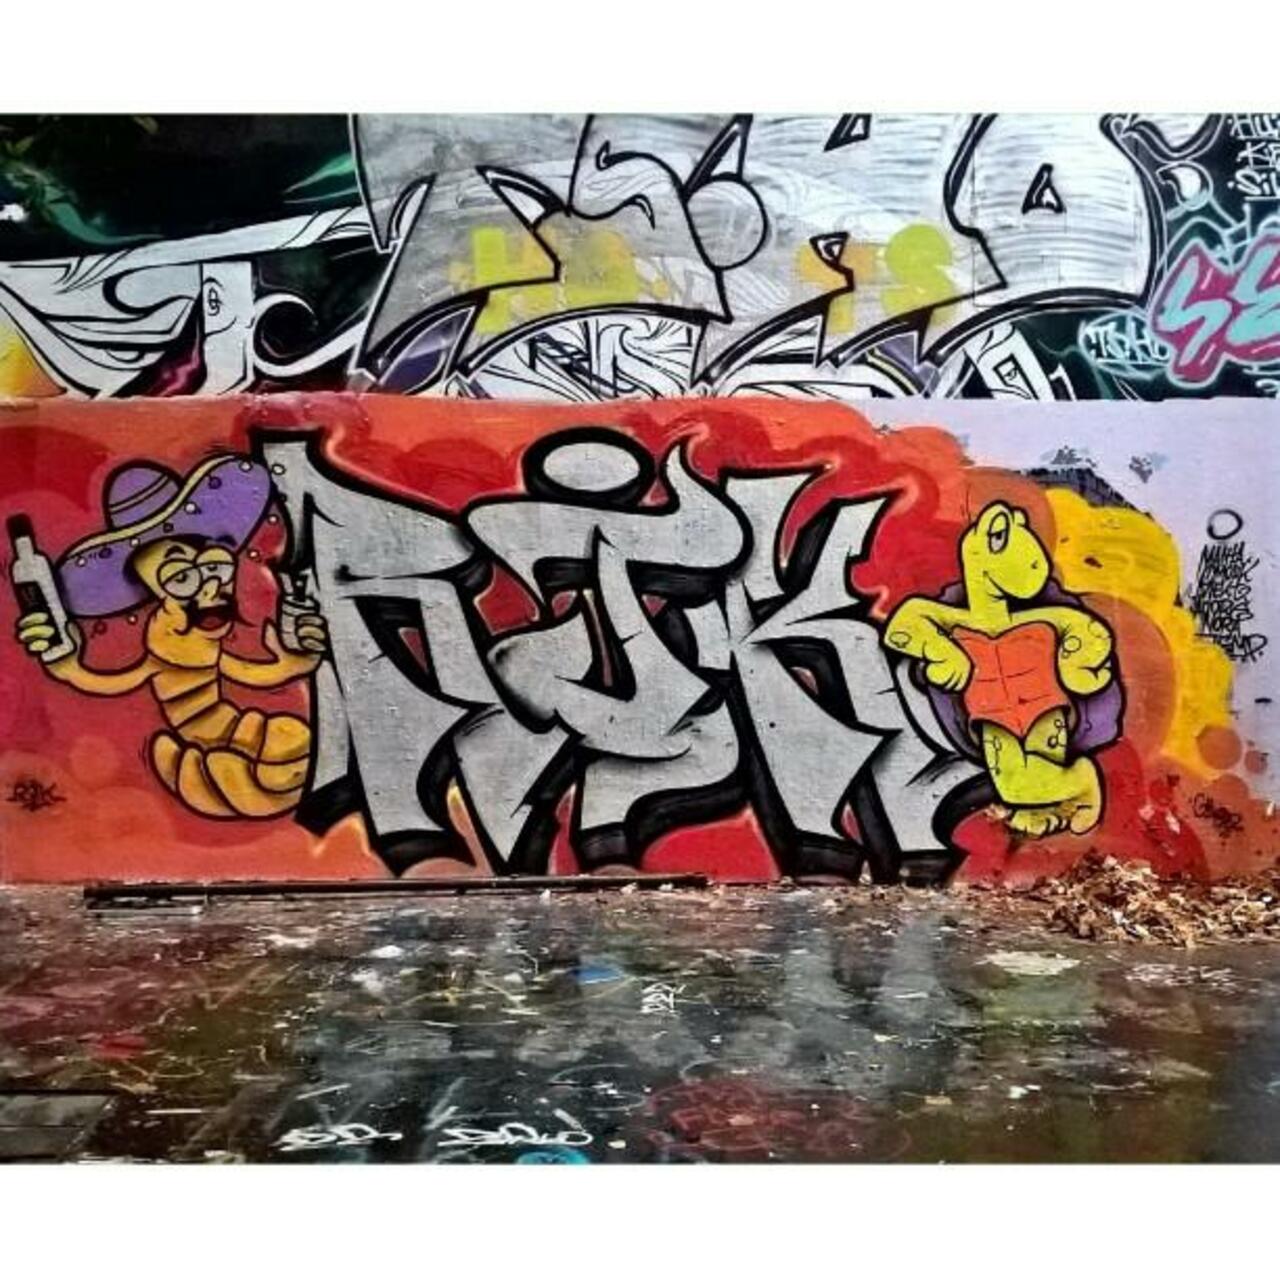 #Paris #graffiti photo by maxdimontemarciano http://ift.tt/1VF9Dhu #StreetArt http://t.co/jgTDz5JYgf https://goo.gl/7kifqw